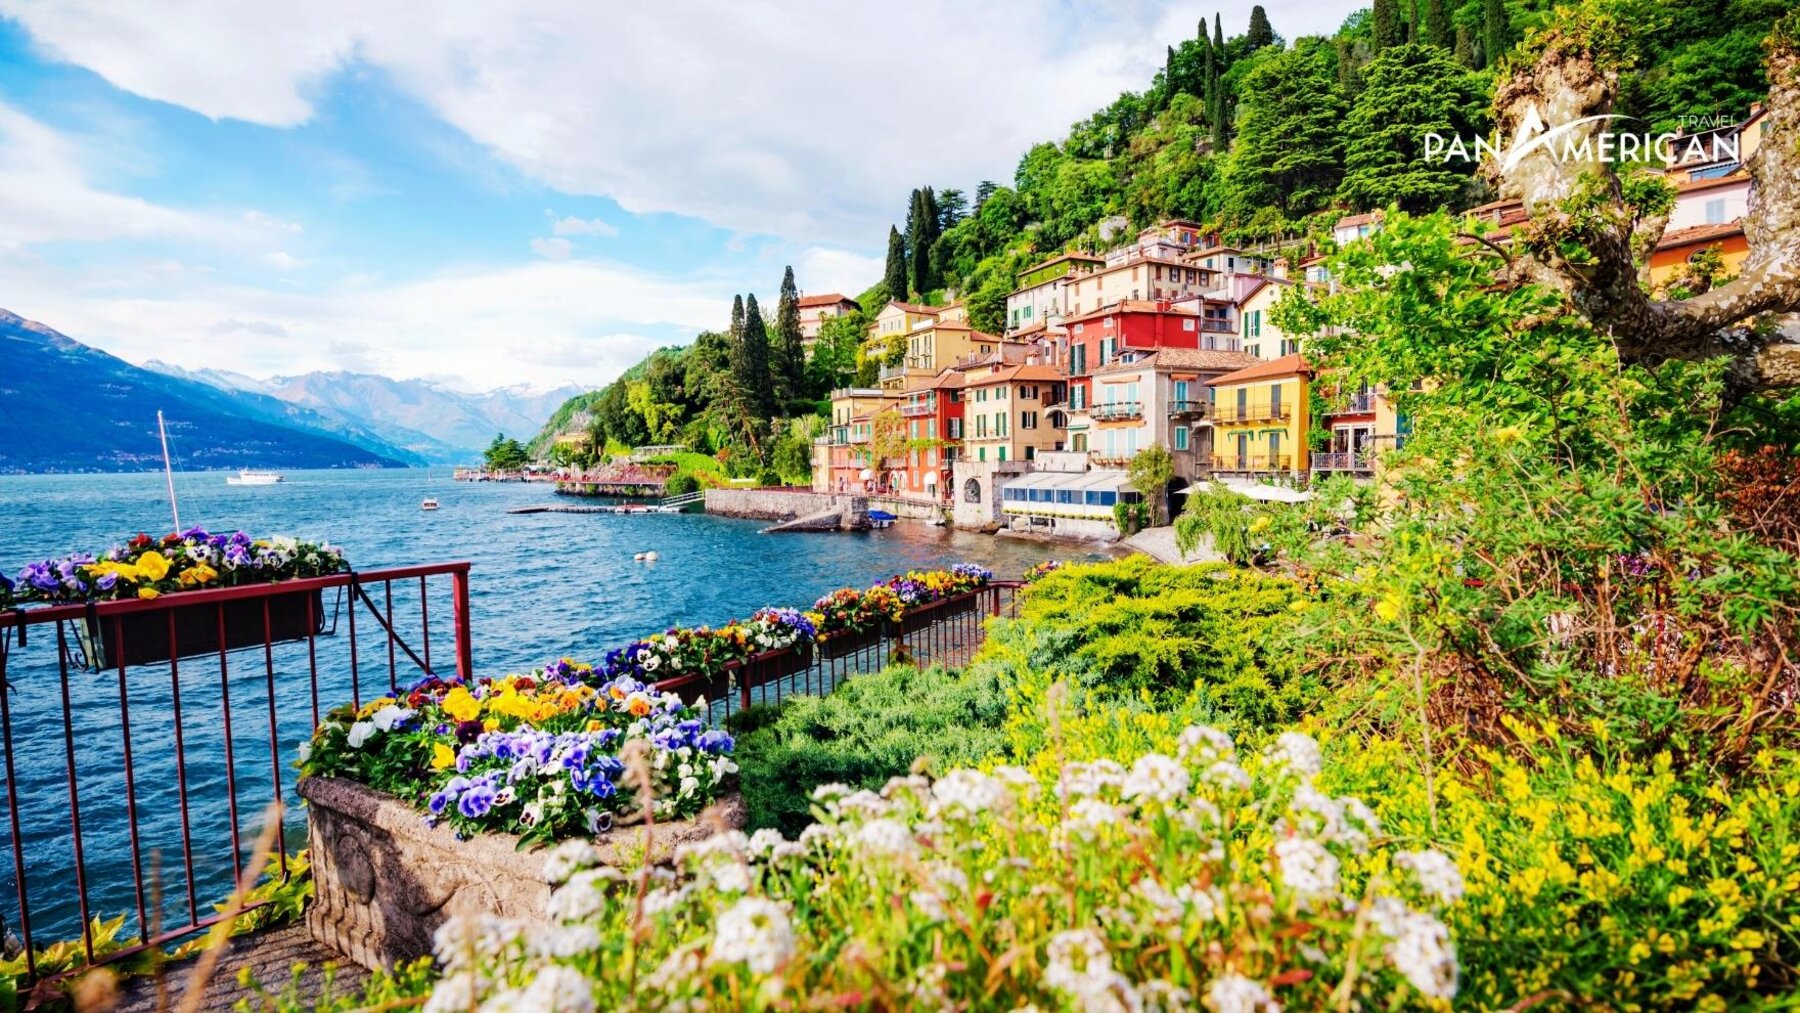 Hồ Como với các ngôi làng sắc màu ven biển 